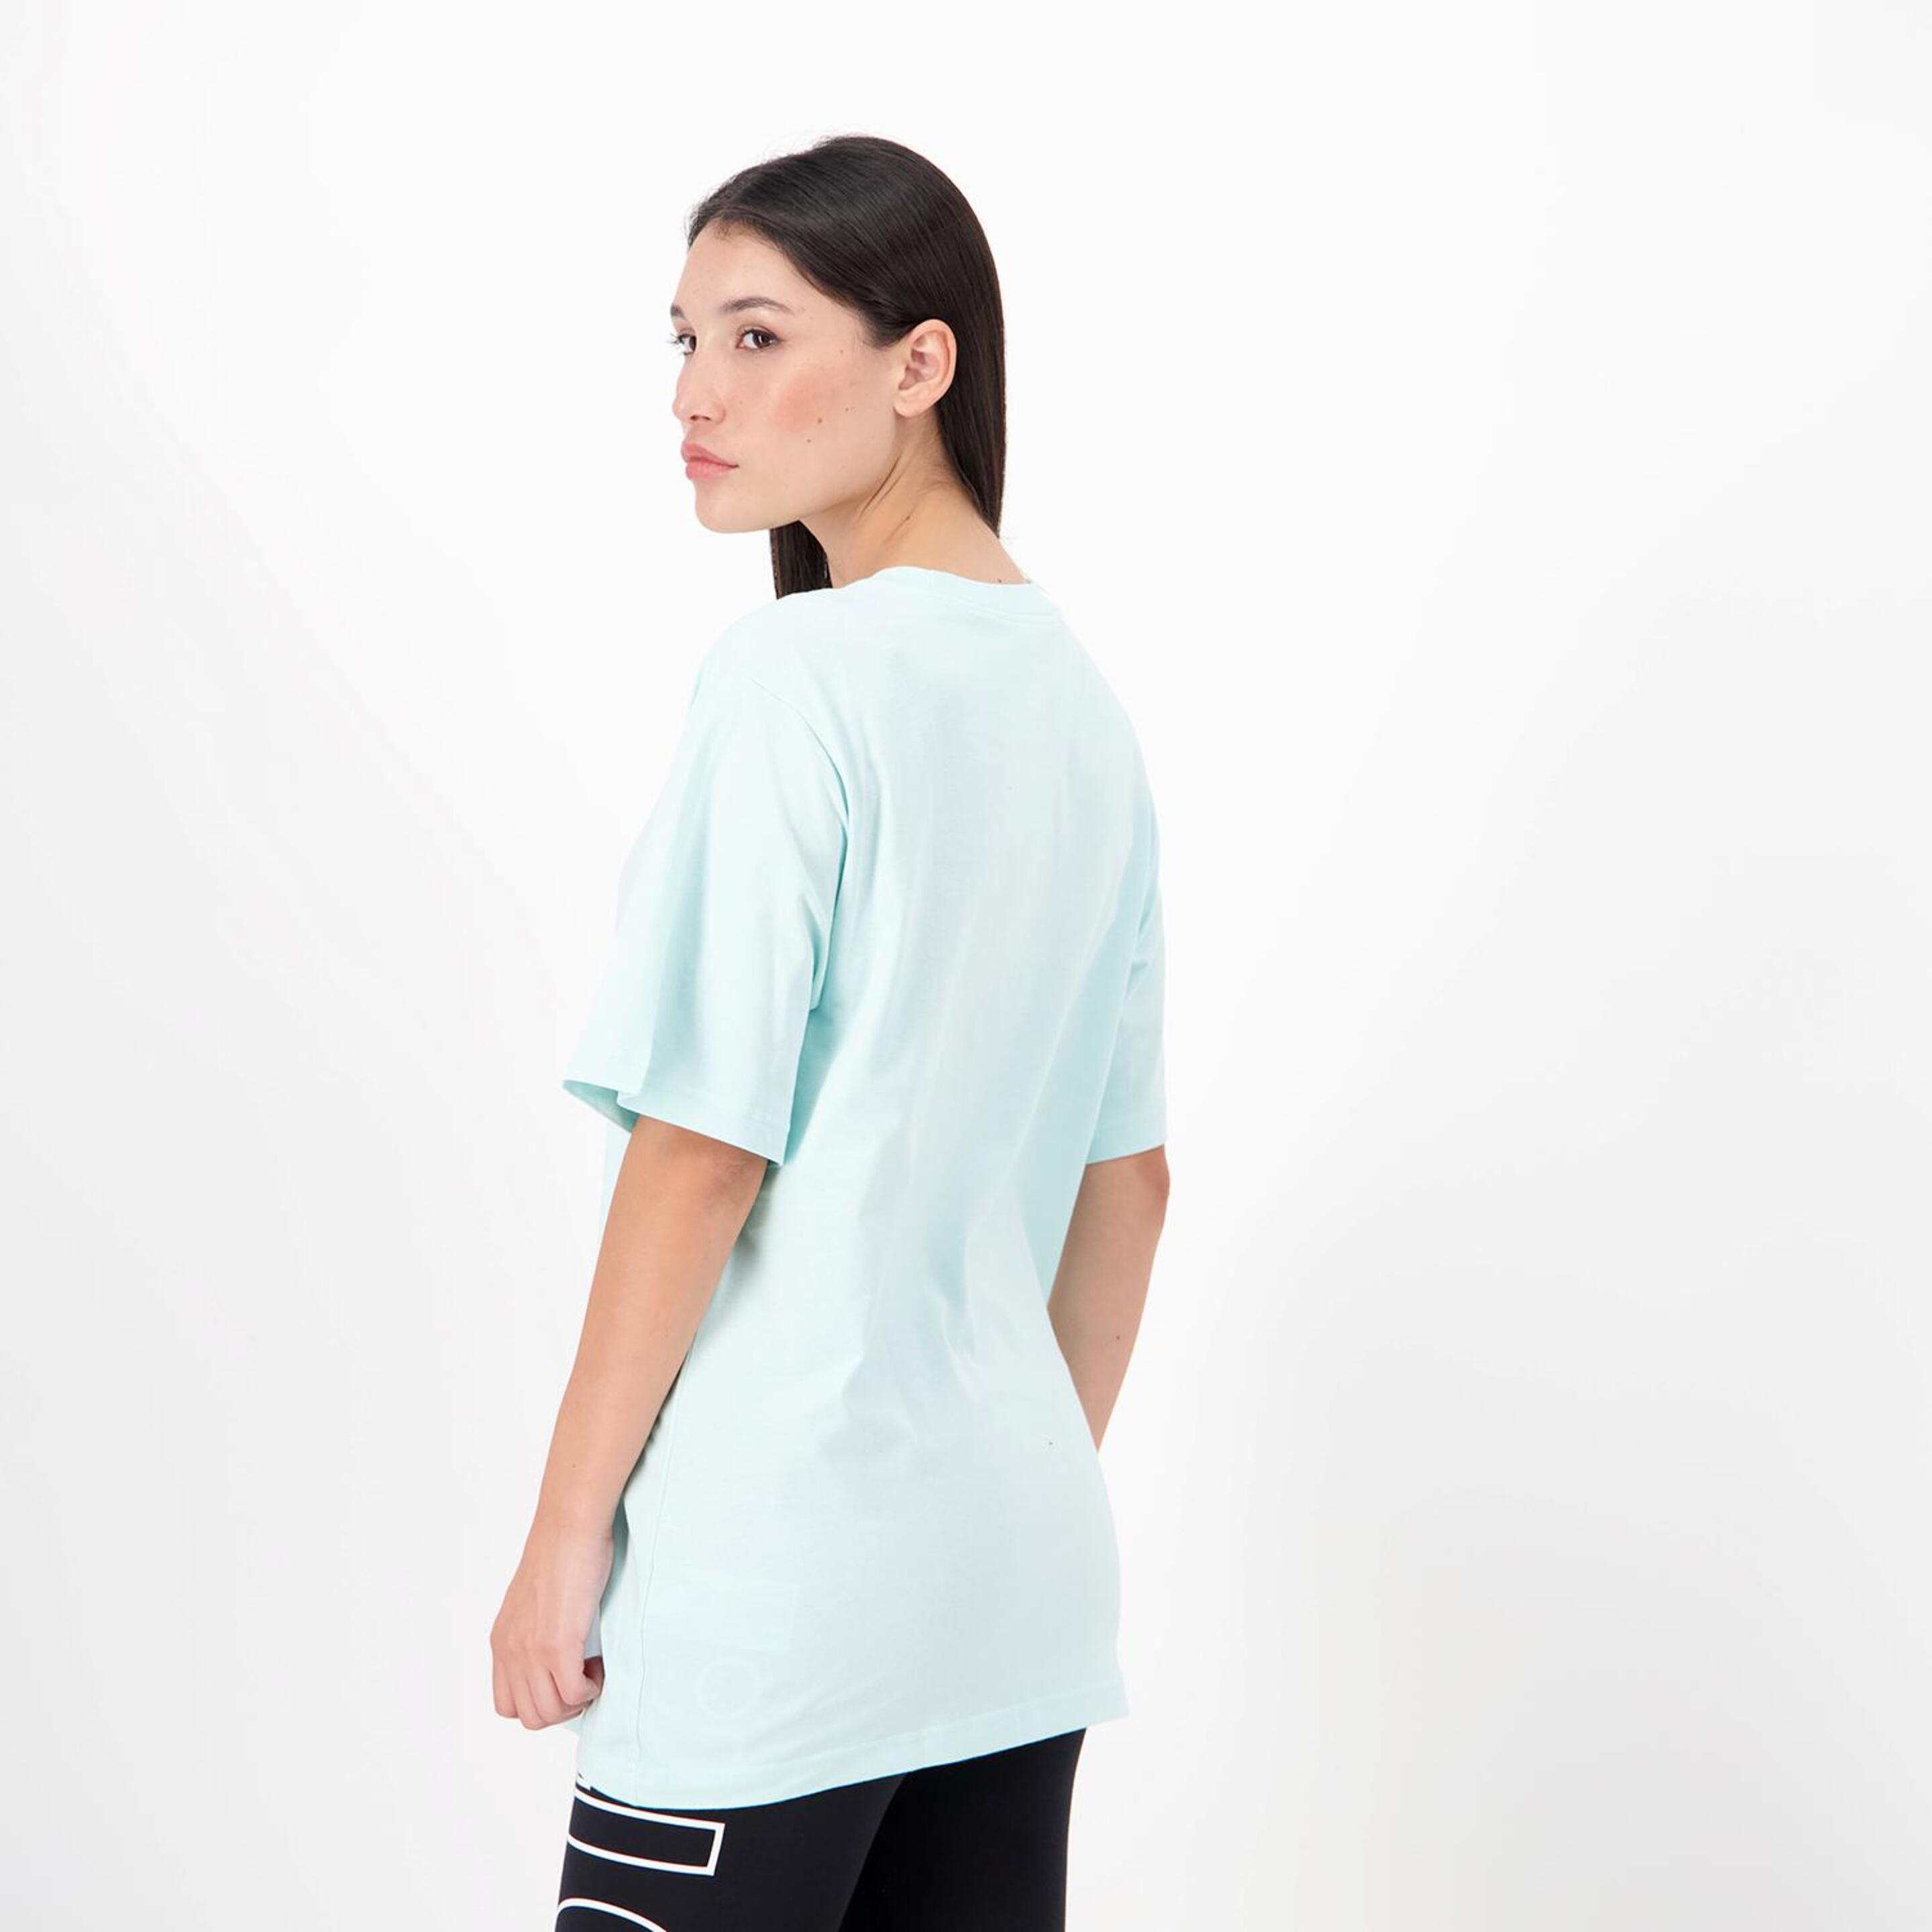 Nike Small Logo - Azul - Camiseta Oversize Mujer